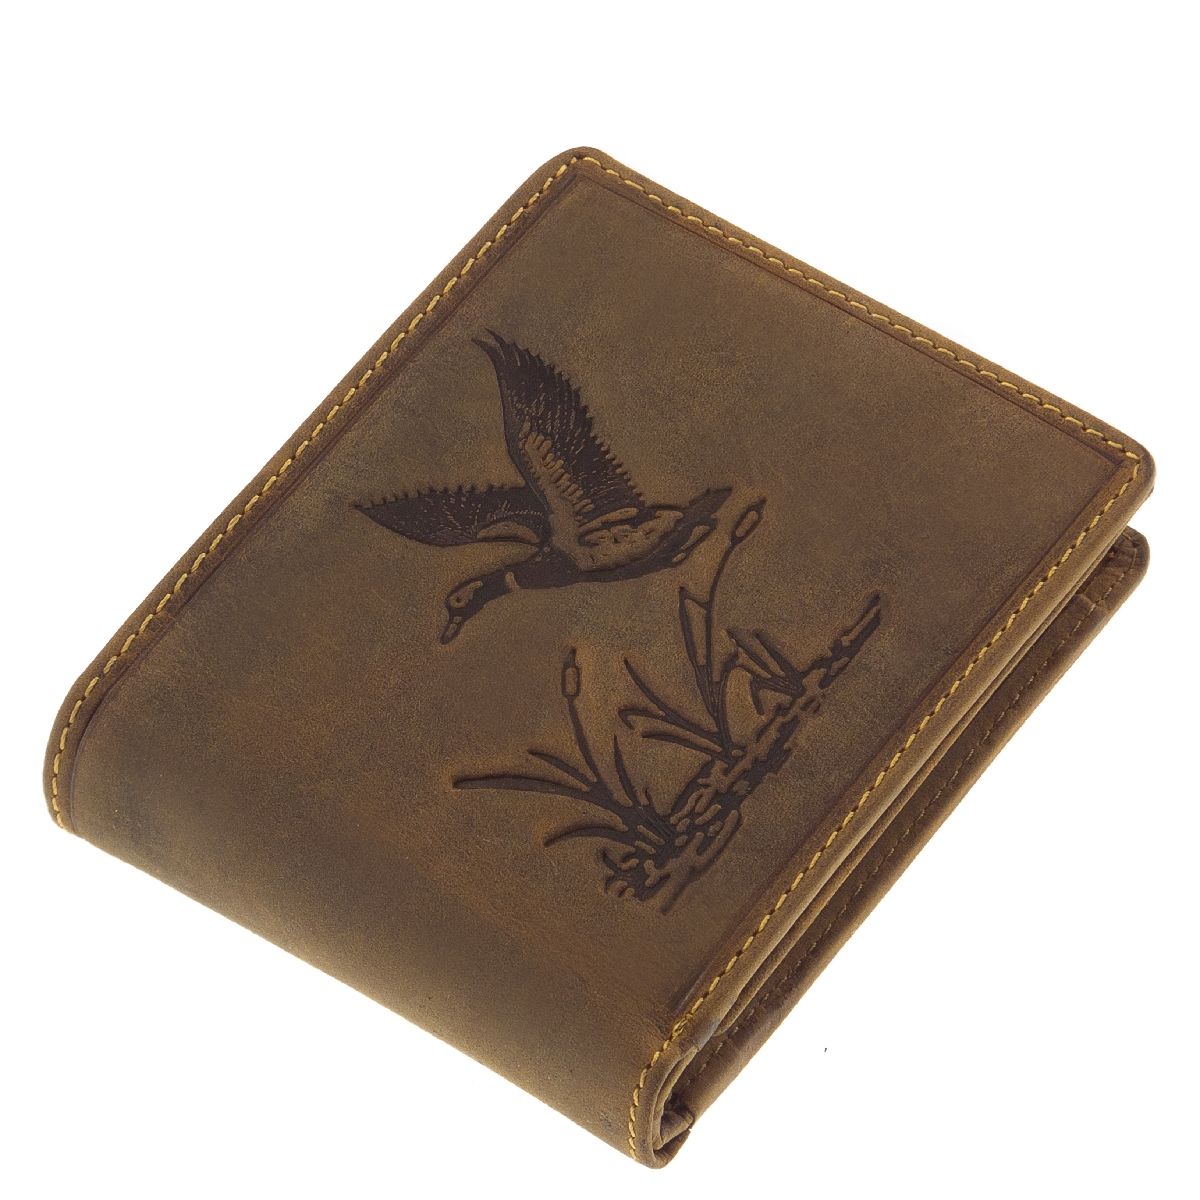 Geldbörse aus unverwüstlichem Büffelleder mit Jagdmotiv Wildente. Das perfekte Geschenk für Jäger